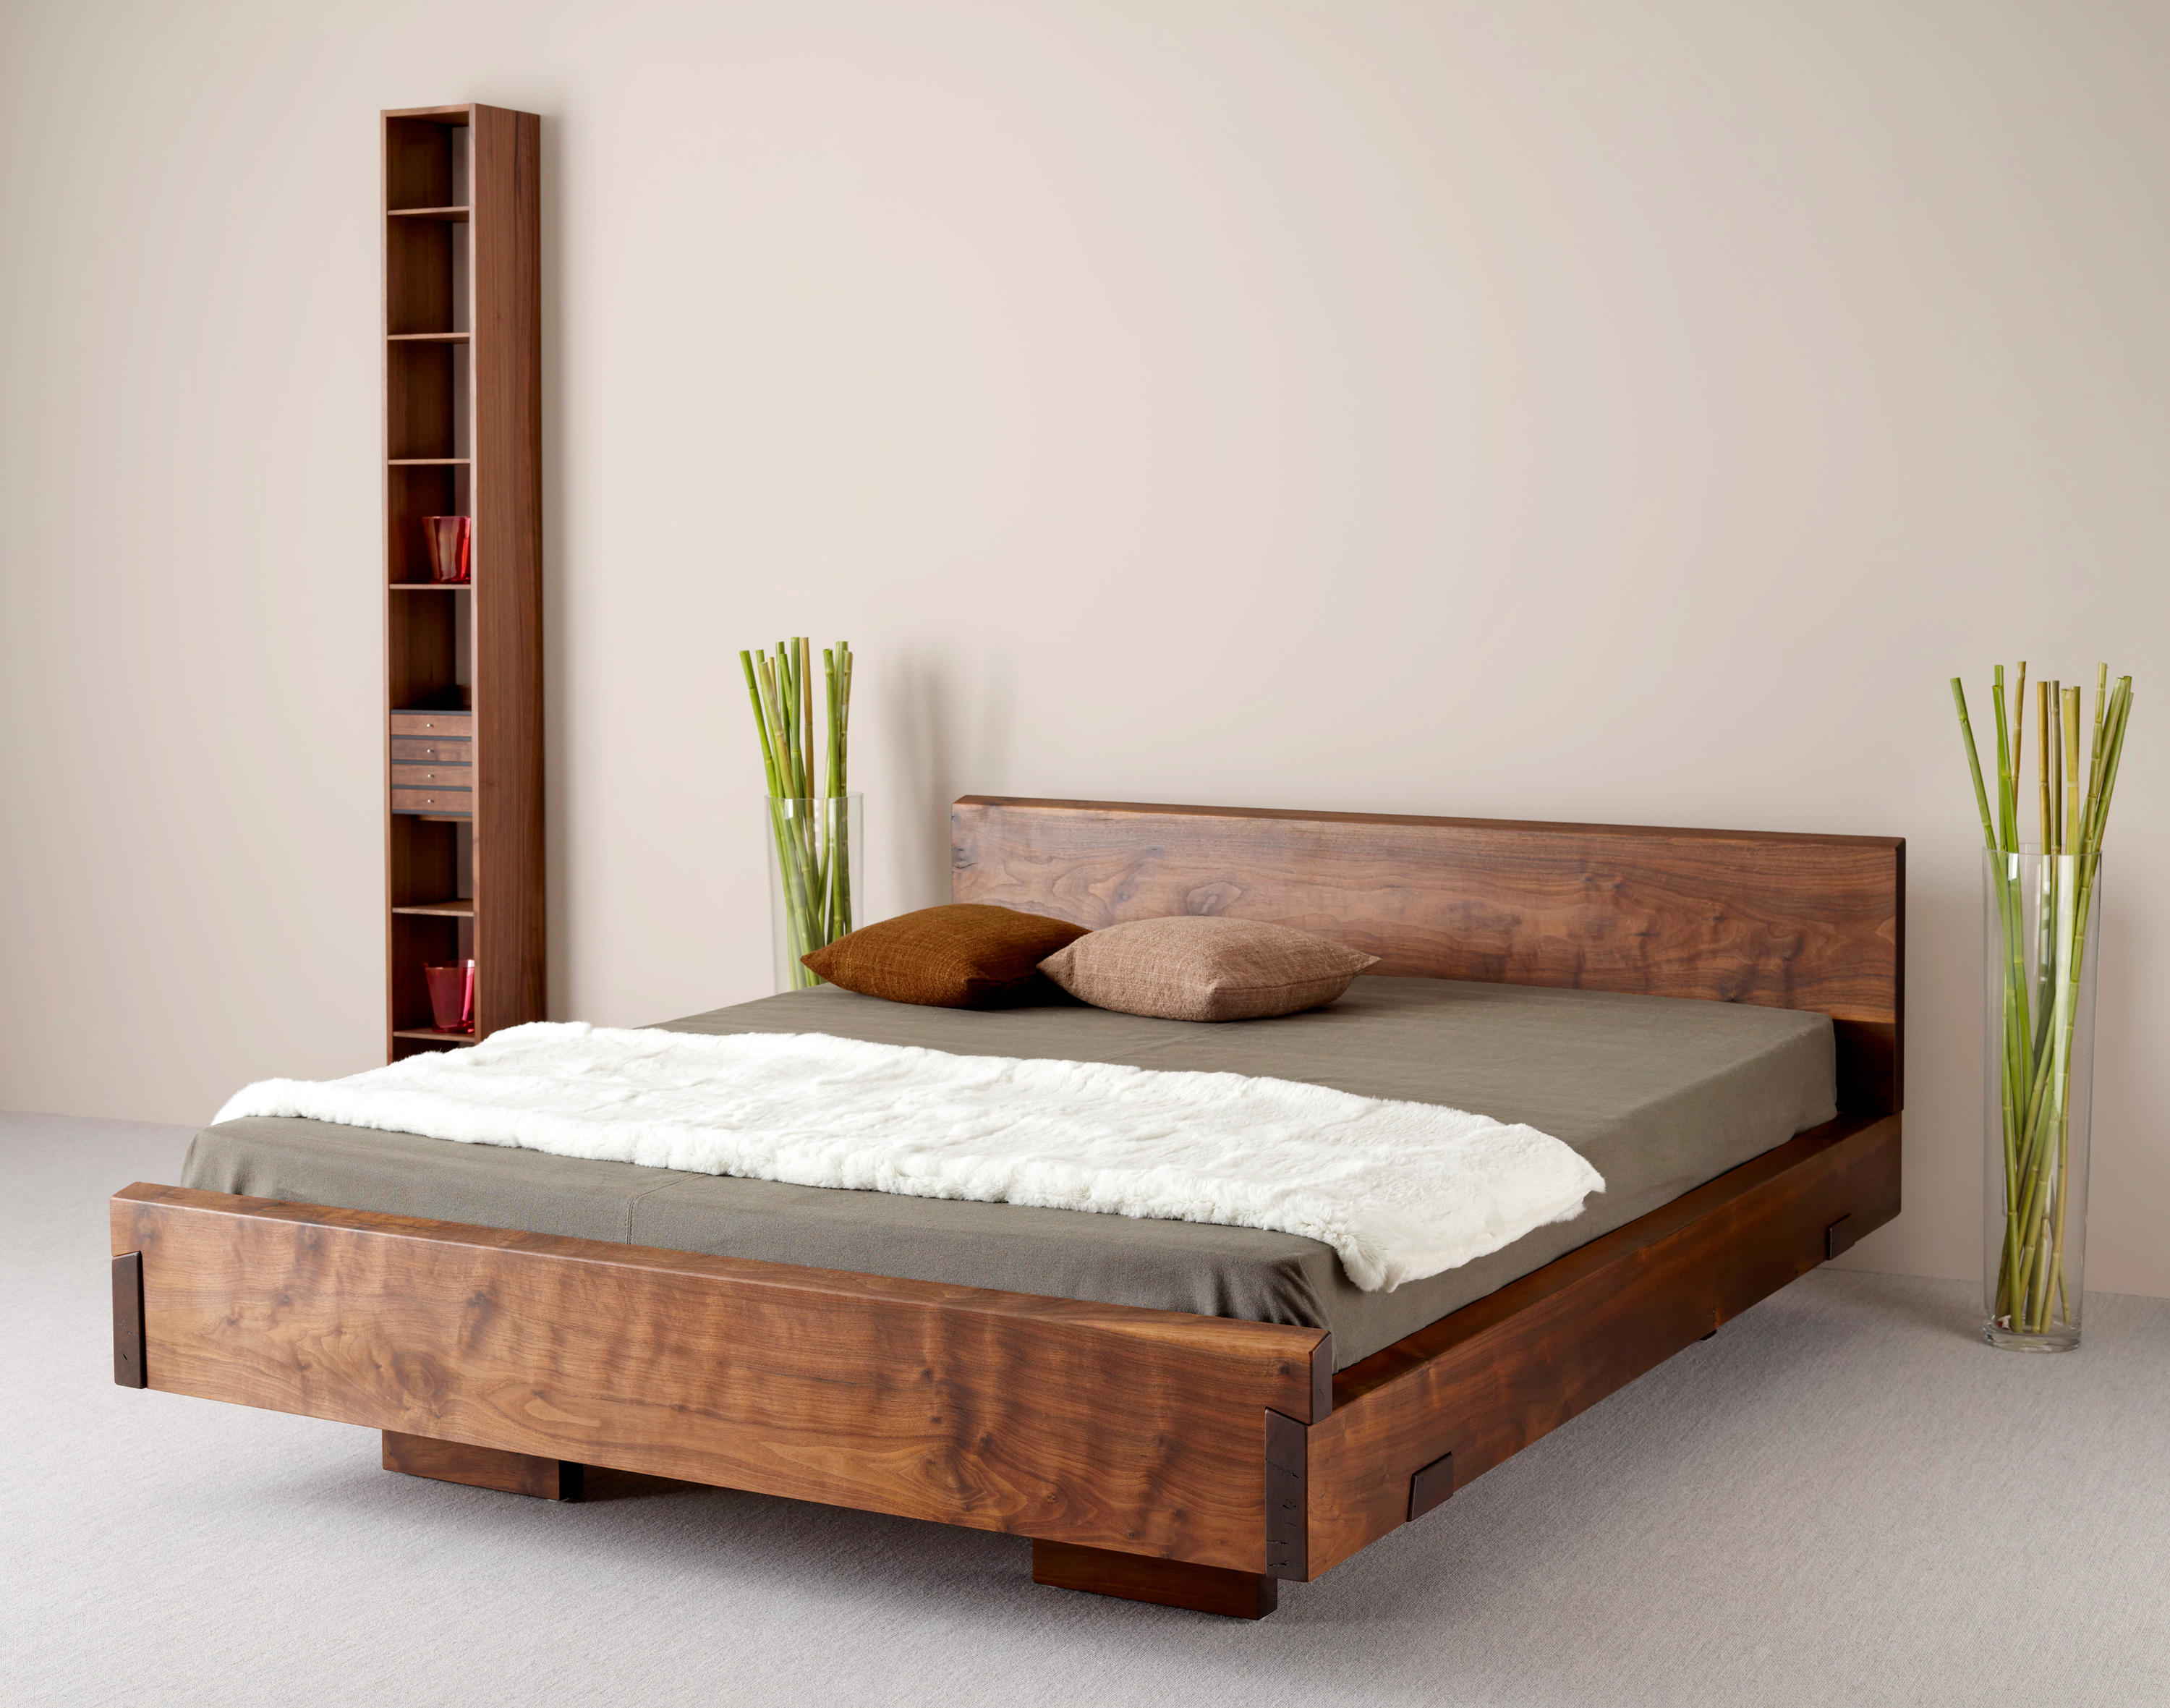 Деревянные кровати своими руками: схемы, чертежи. Как сделать деревянную кровать своими руками